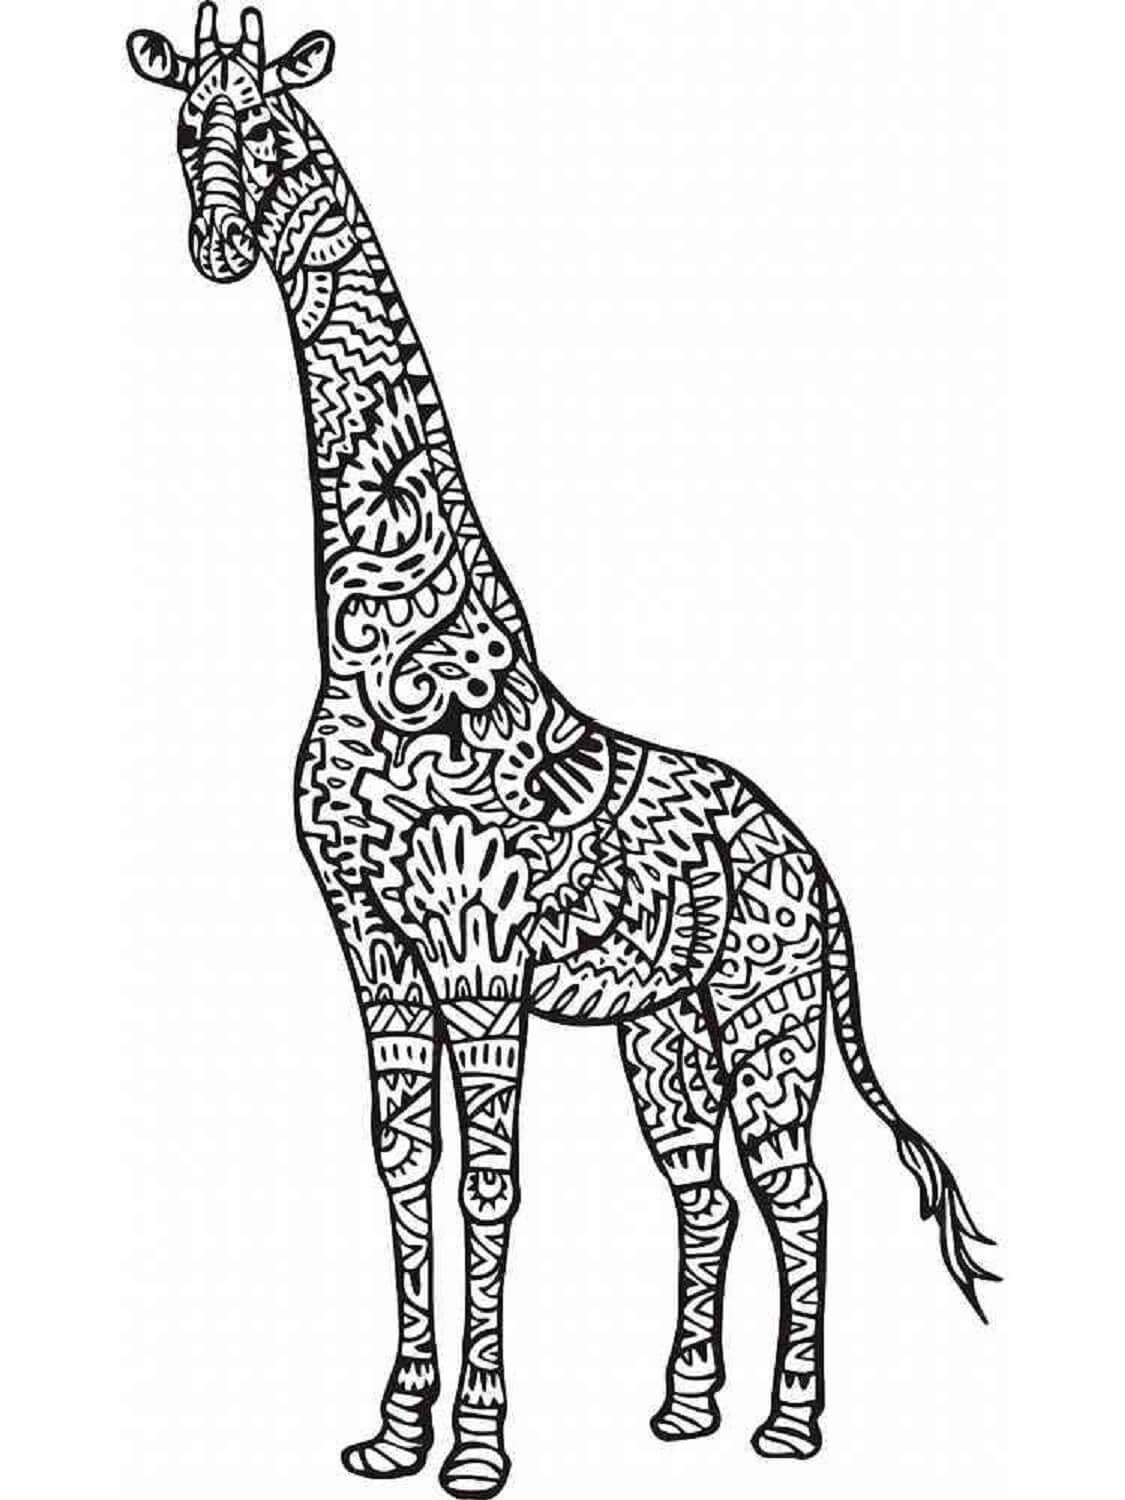 Mandala Giraffe Coloring Page - Sheet 5 Mandalas